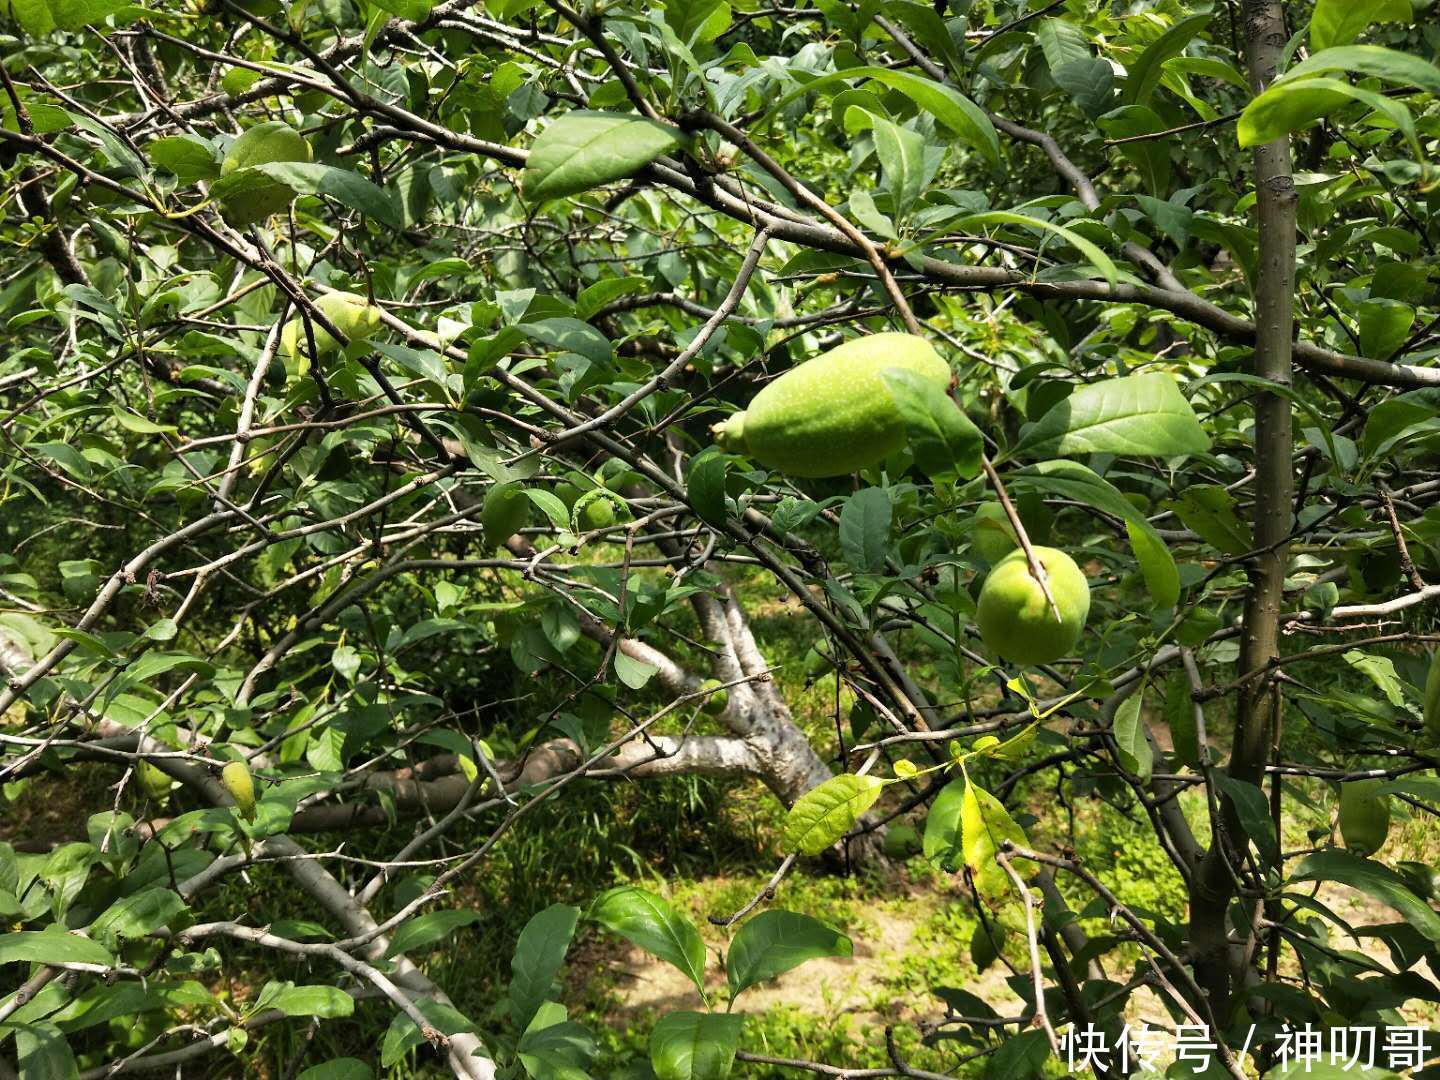 公园常见的木瓜海棠,没想到还有减肥的功效